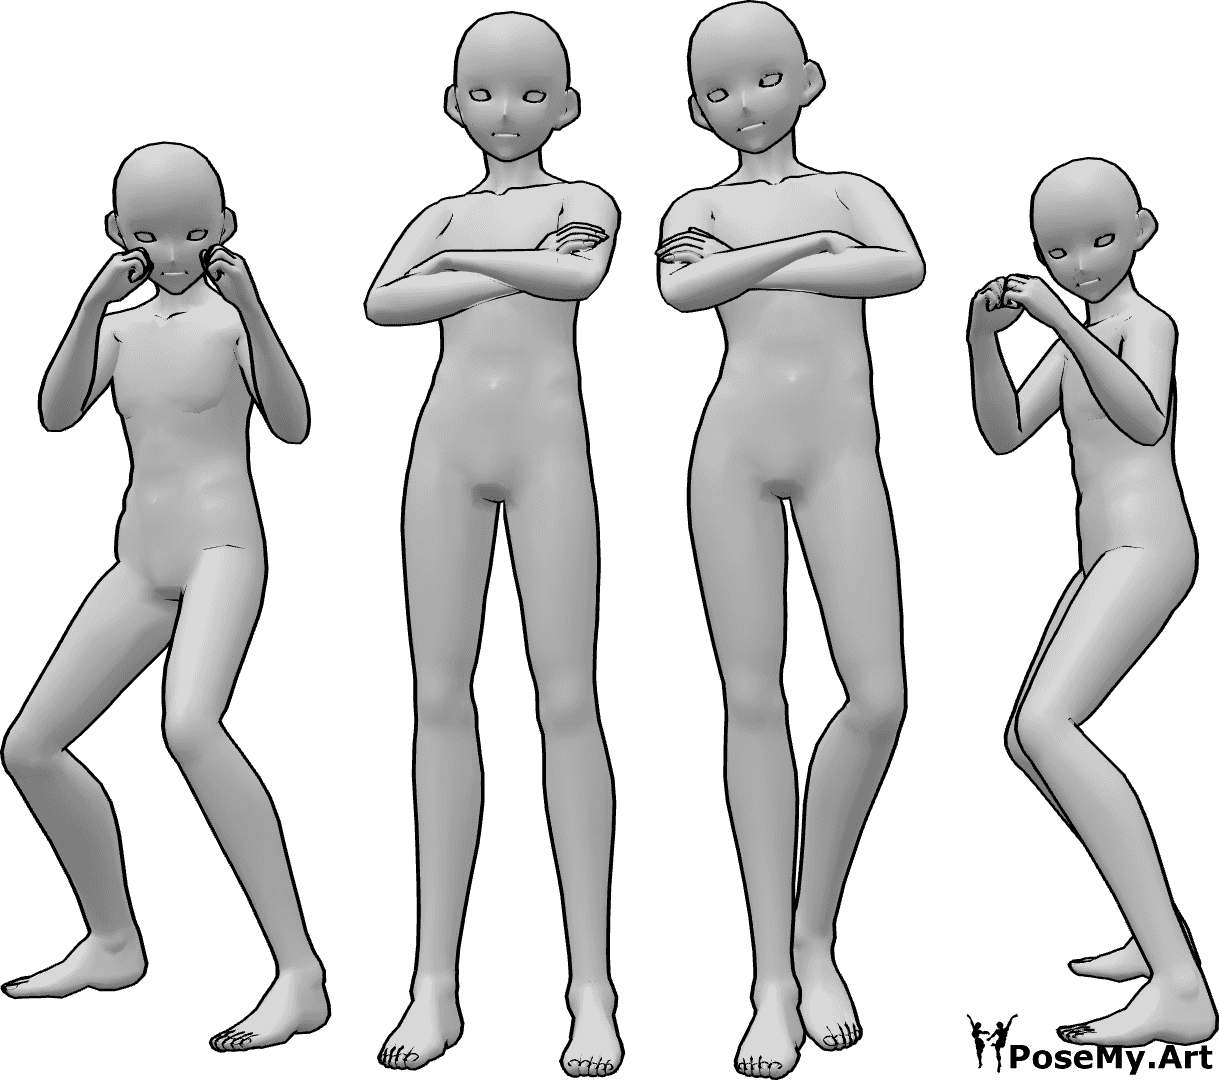 Référence des poses- Pose d'un combattant de l'anime - Quatre combattants de sexe masculin posent, deux d'entre eux sont en position de boxe et les deux autres sont debout, les bras croisés.